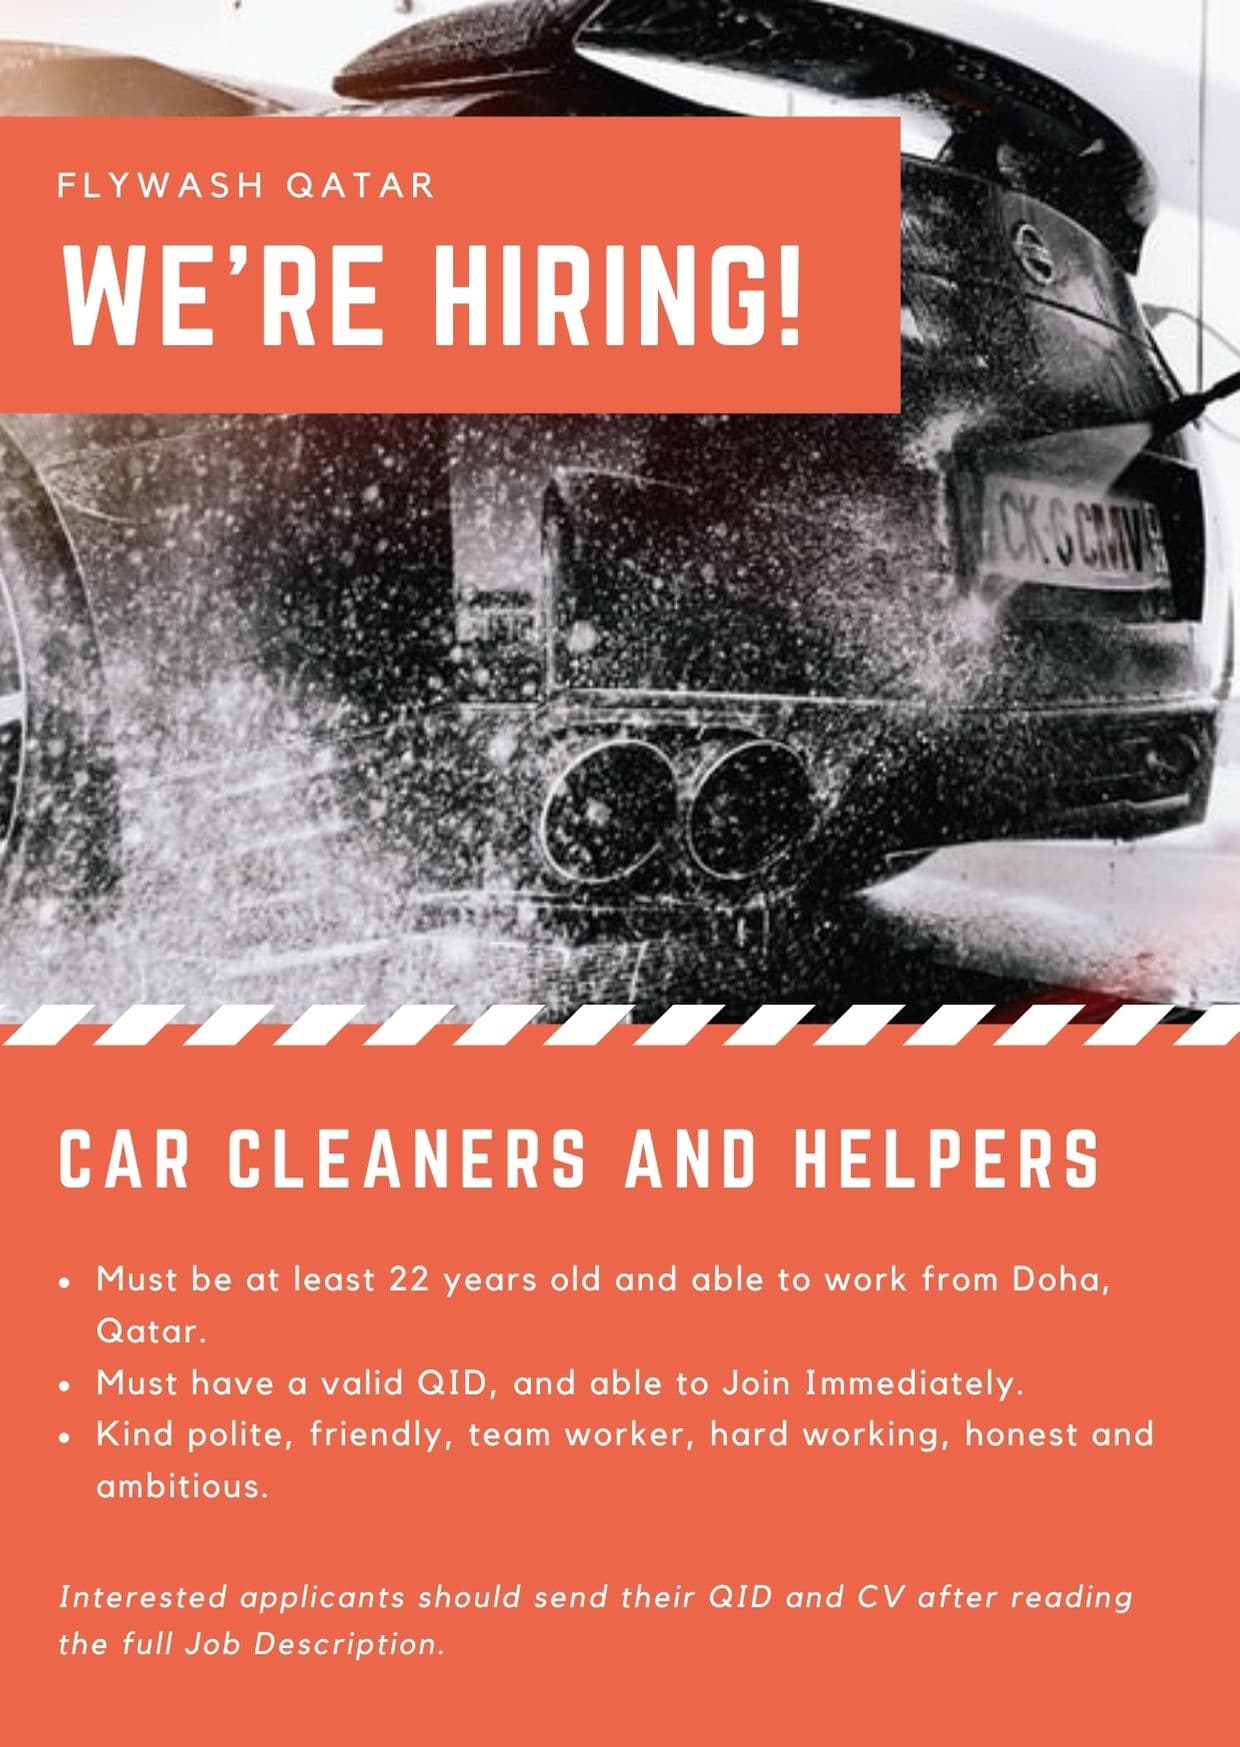 Car Cleaner and Helper Job